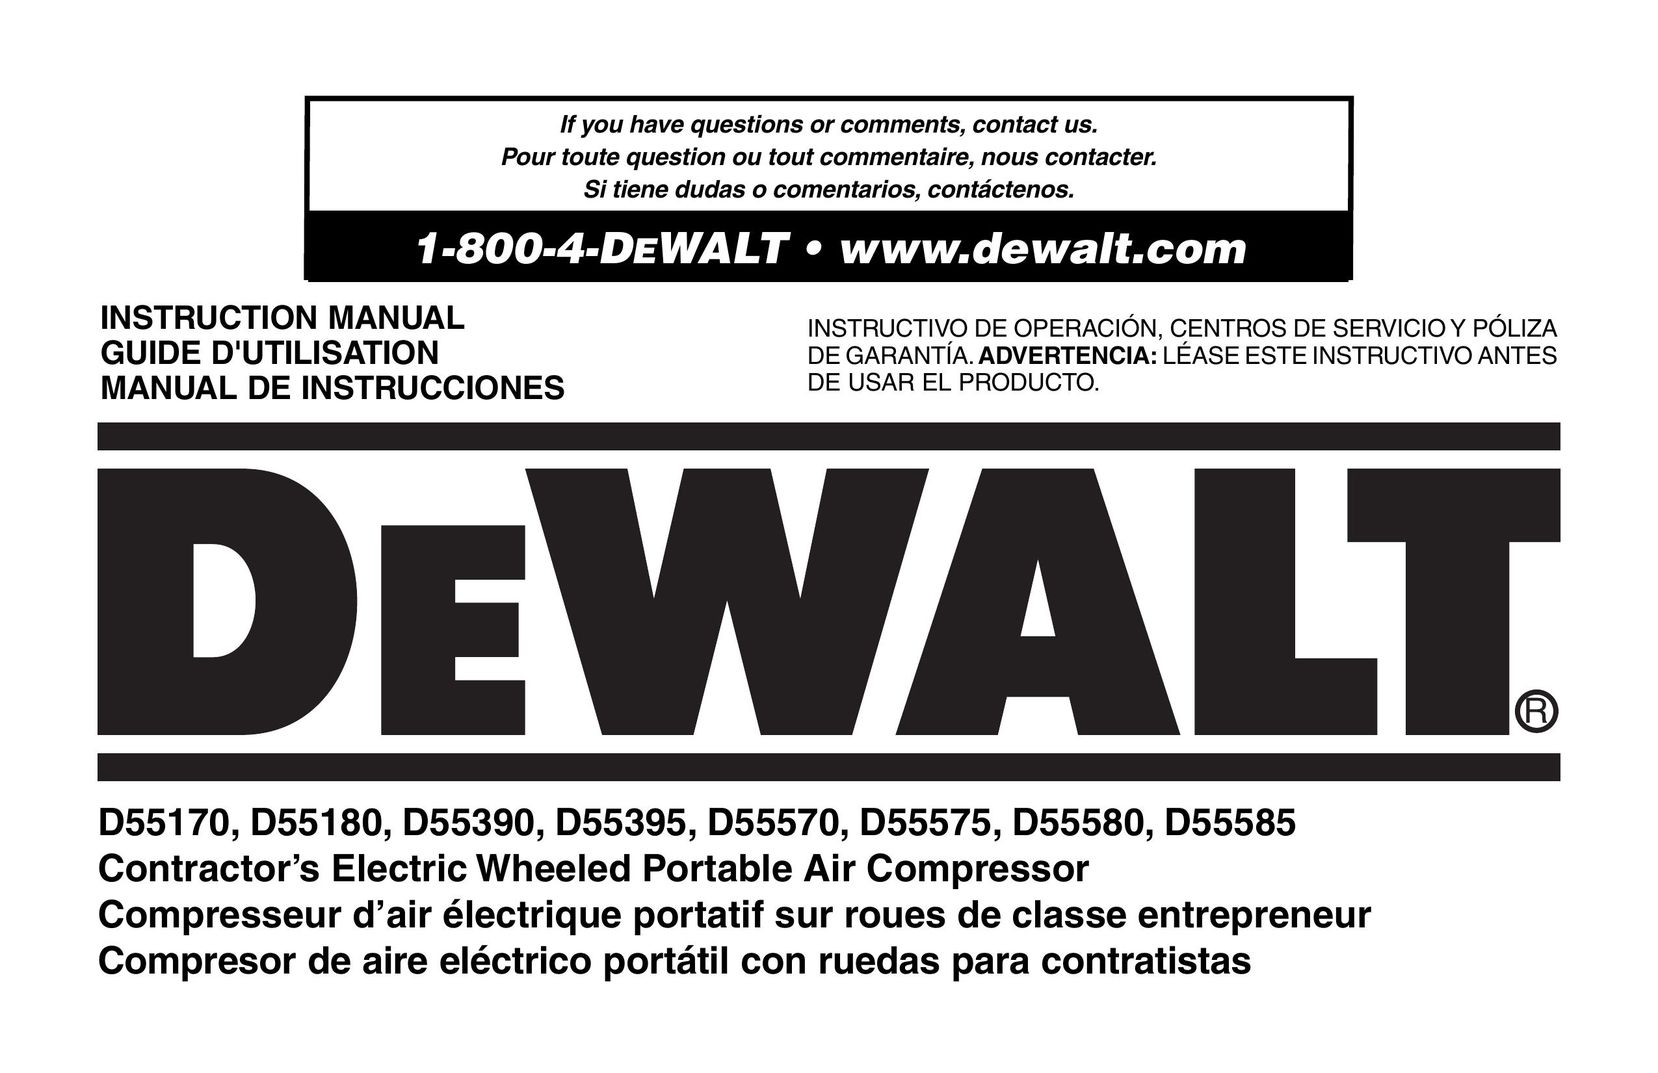 DeWalt D55390 Air Compressor User Manual